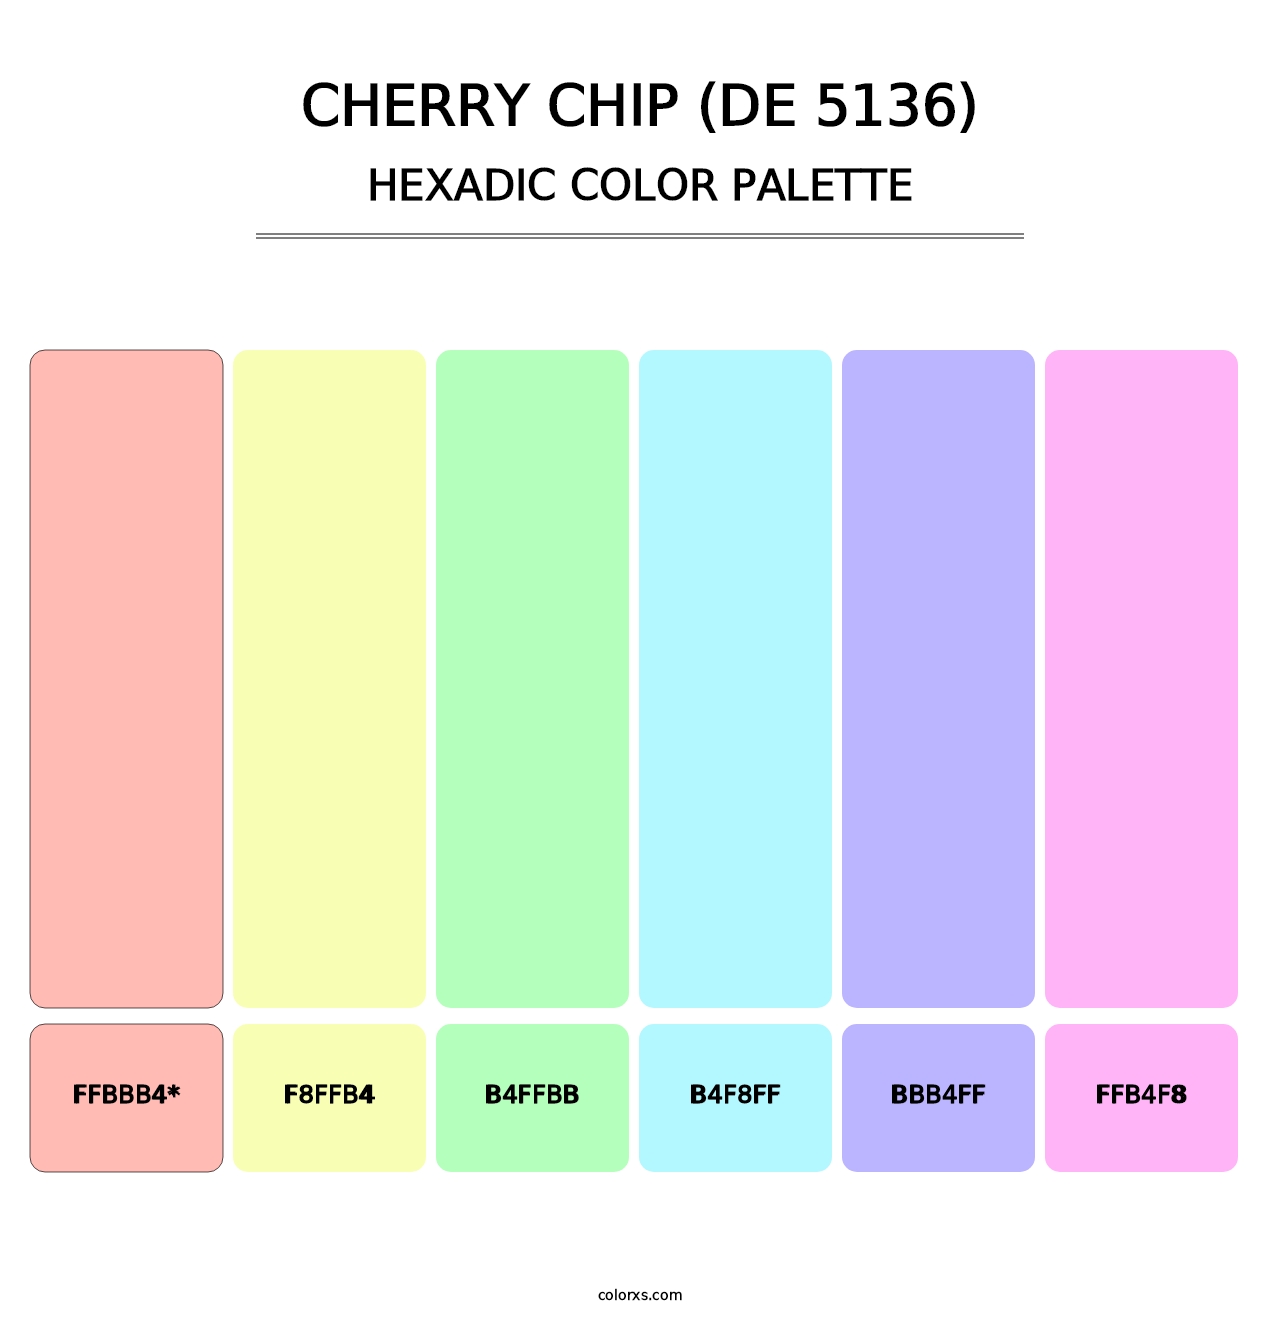 Cherry Chip (DE 5136) - Hexadic Color Palette